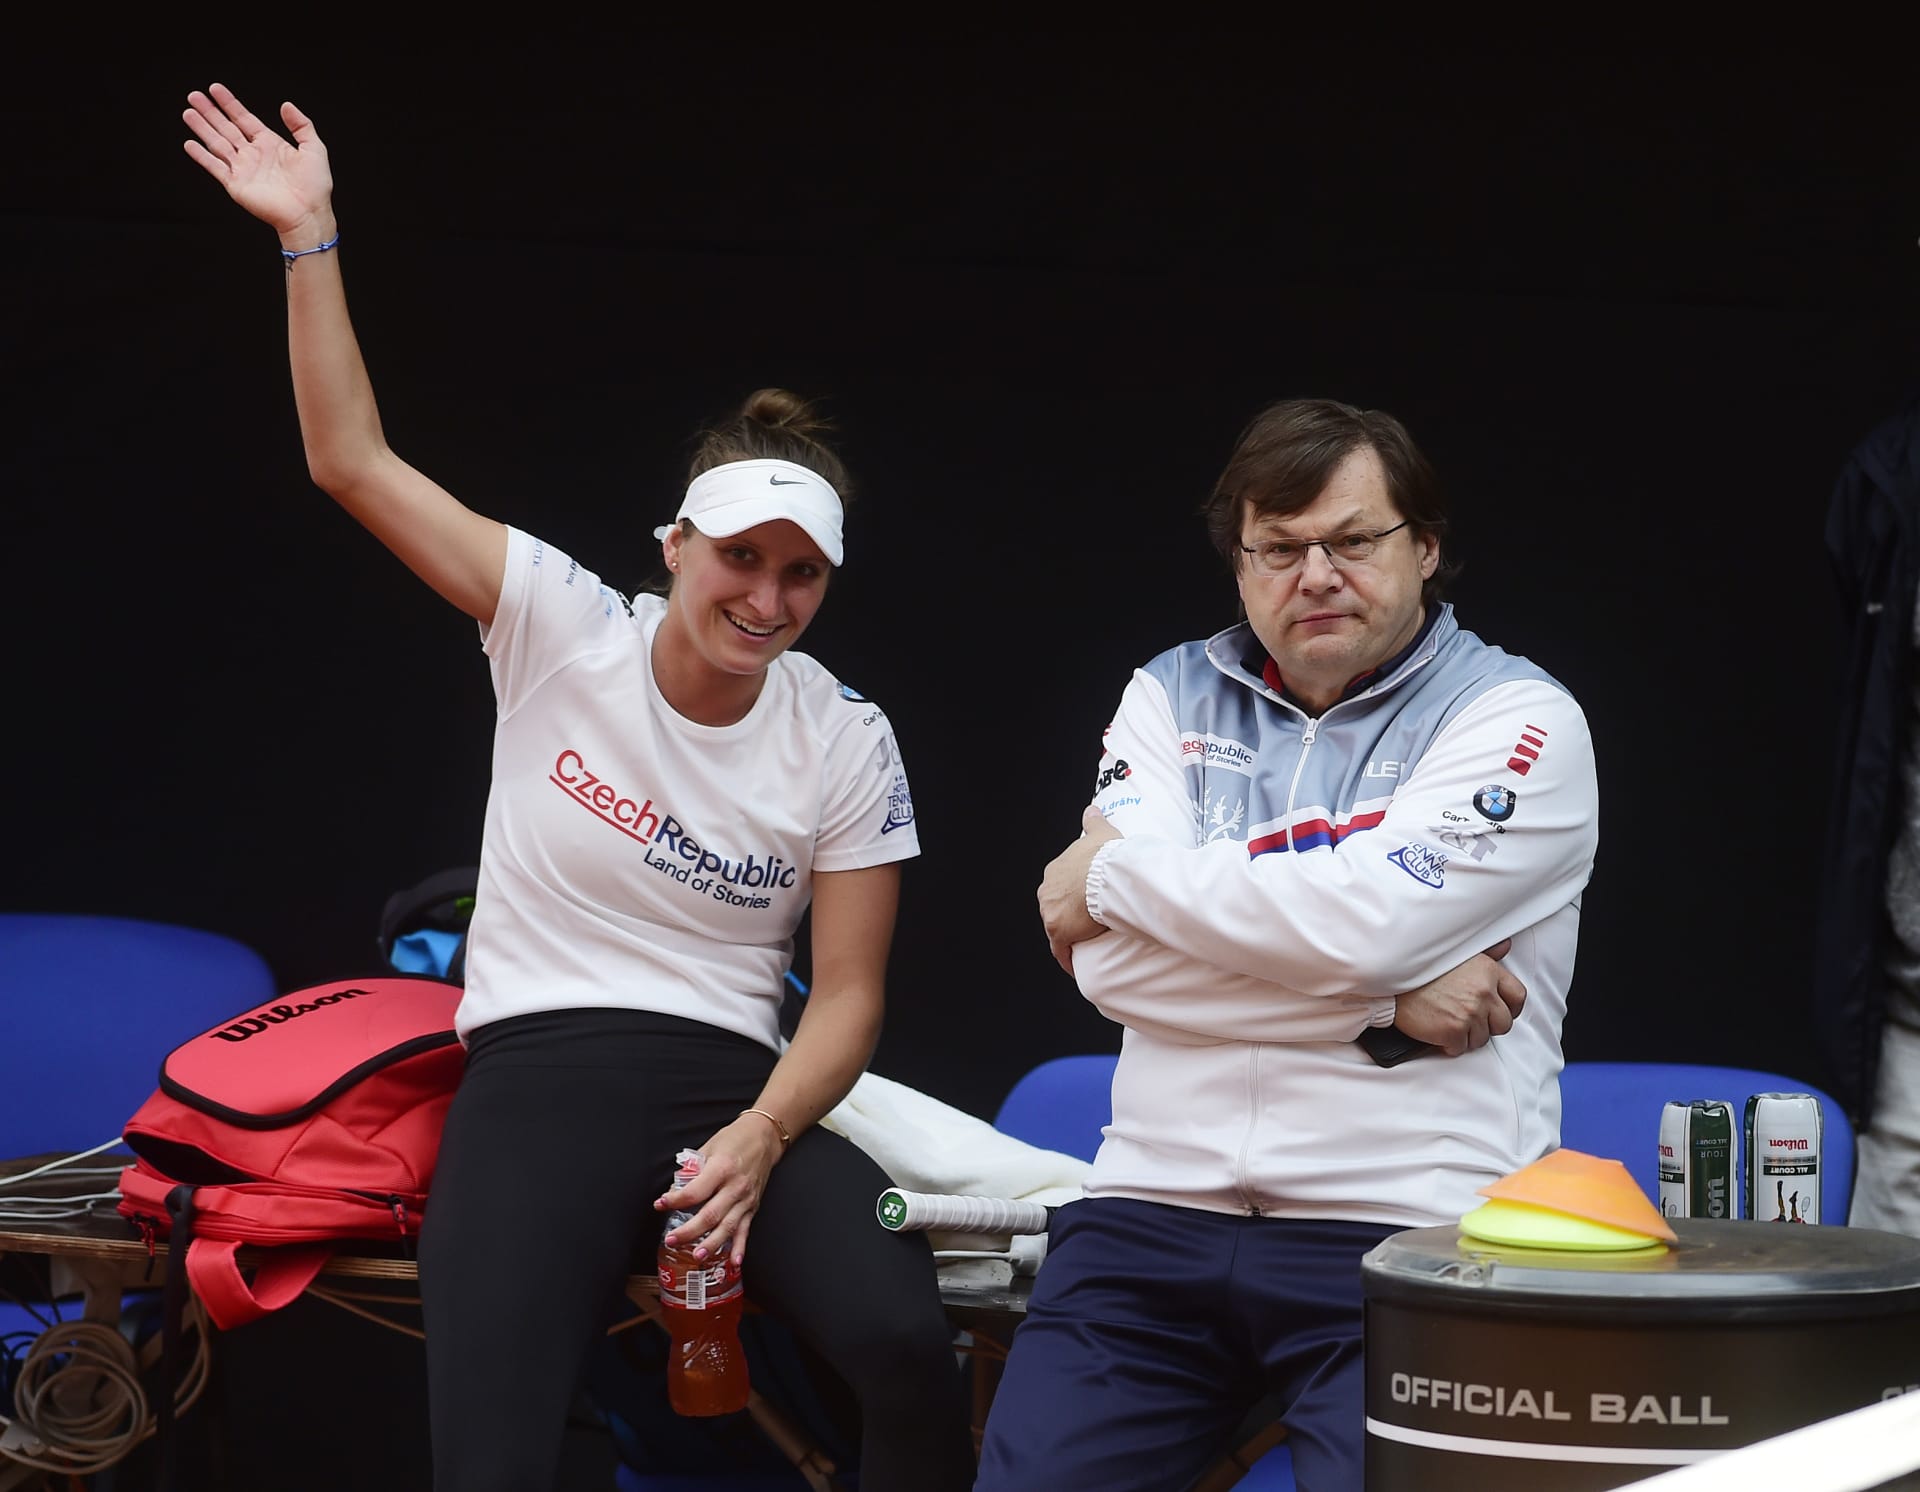 Český lékař Vlastimil Voráček, na fotografii s tenistkou Markétou Vondroušovou, byl deníkem The Guardian „oceněn“ jako jeden z letošních sportovních antihrdinů.